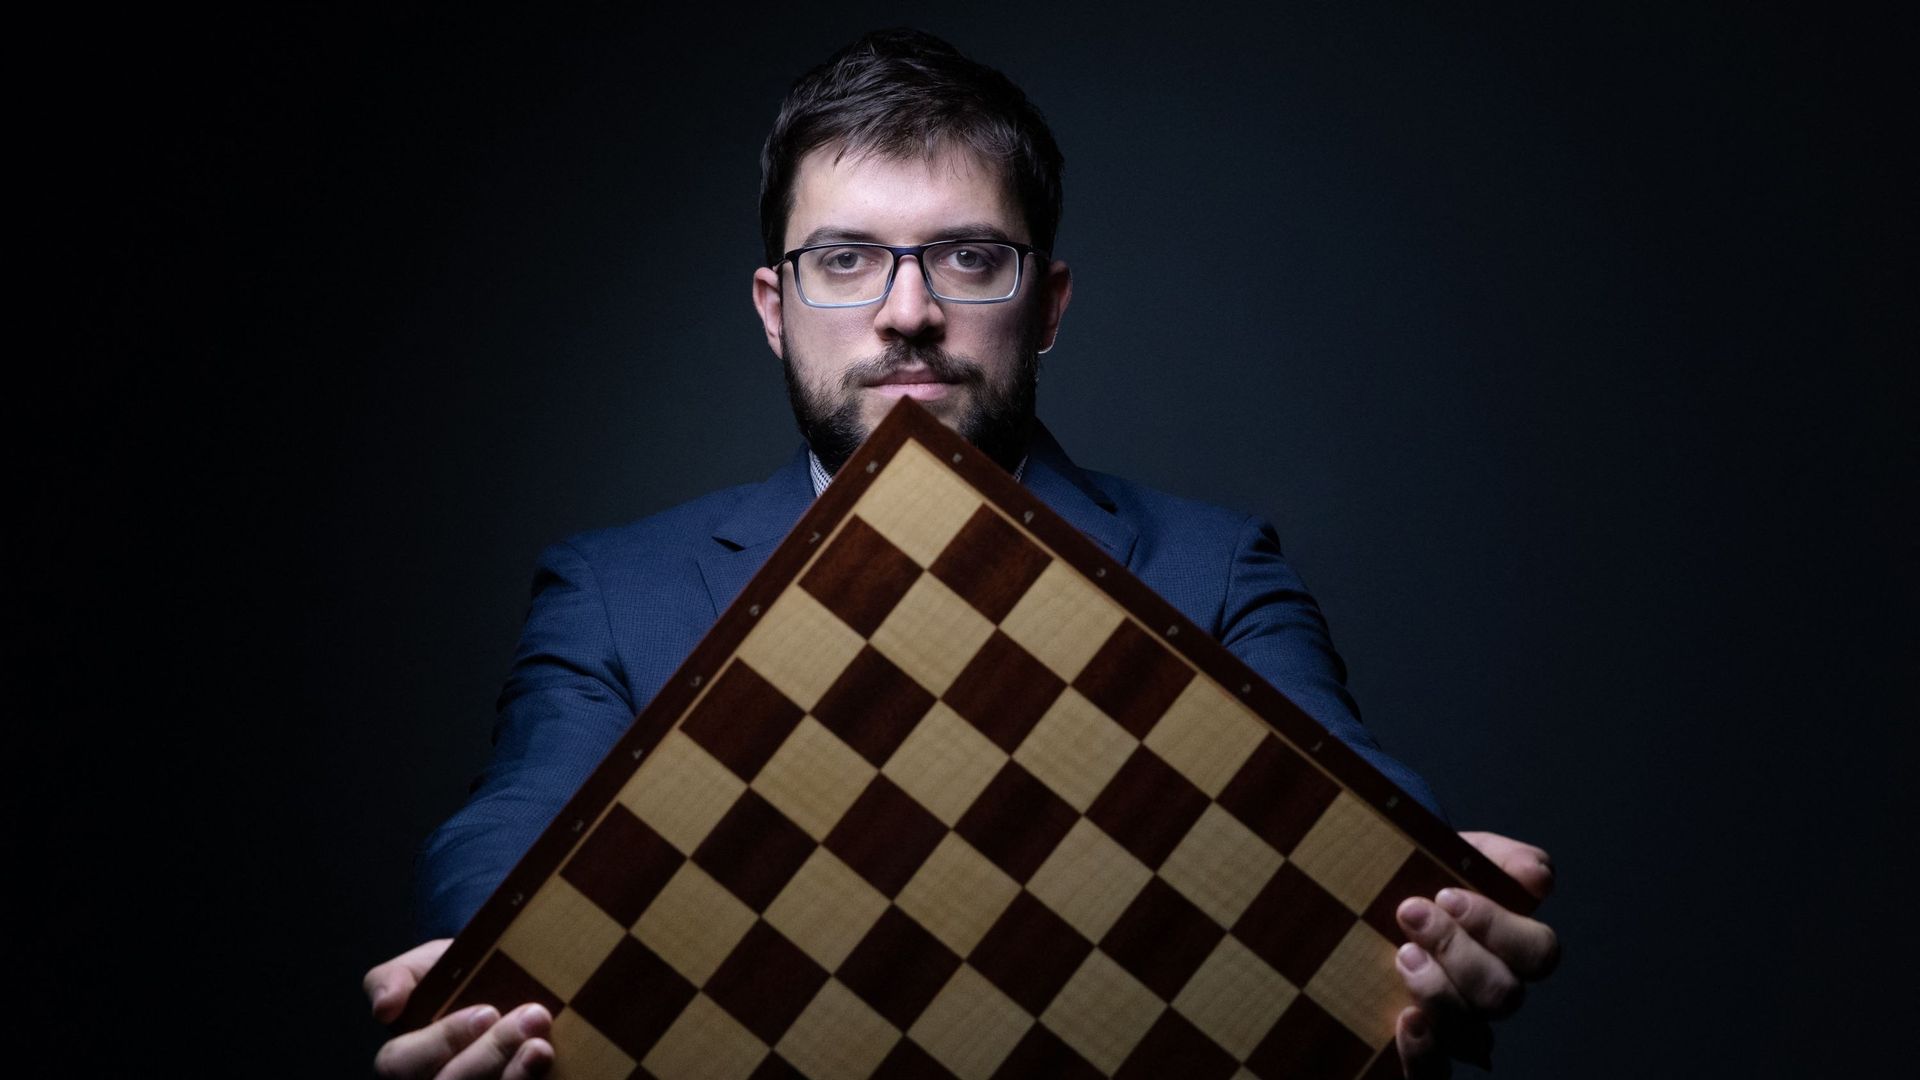 Maxime Vachier-Lagrave est le nouveau champion du monde de blitz, parties rapides d'échecs.